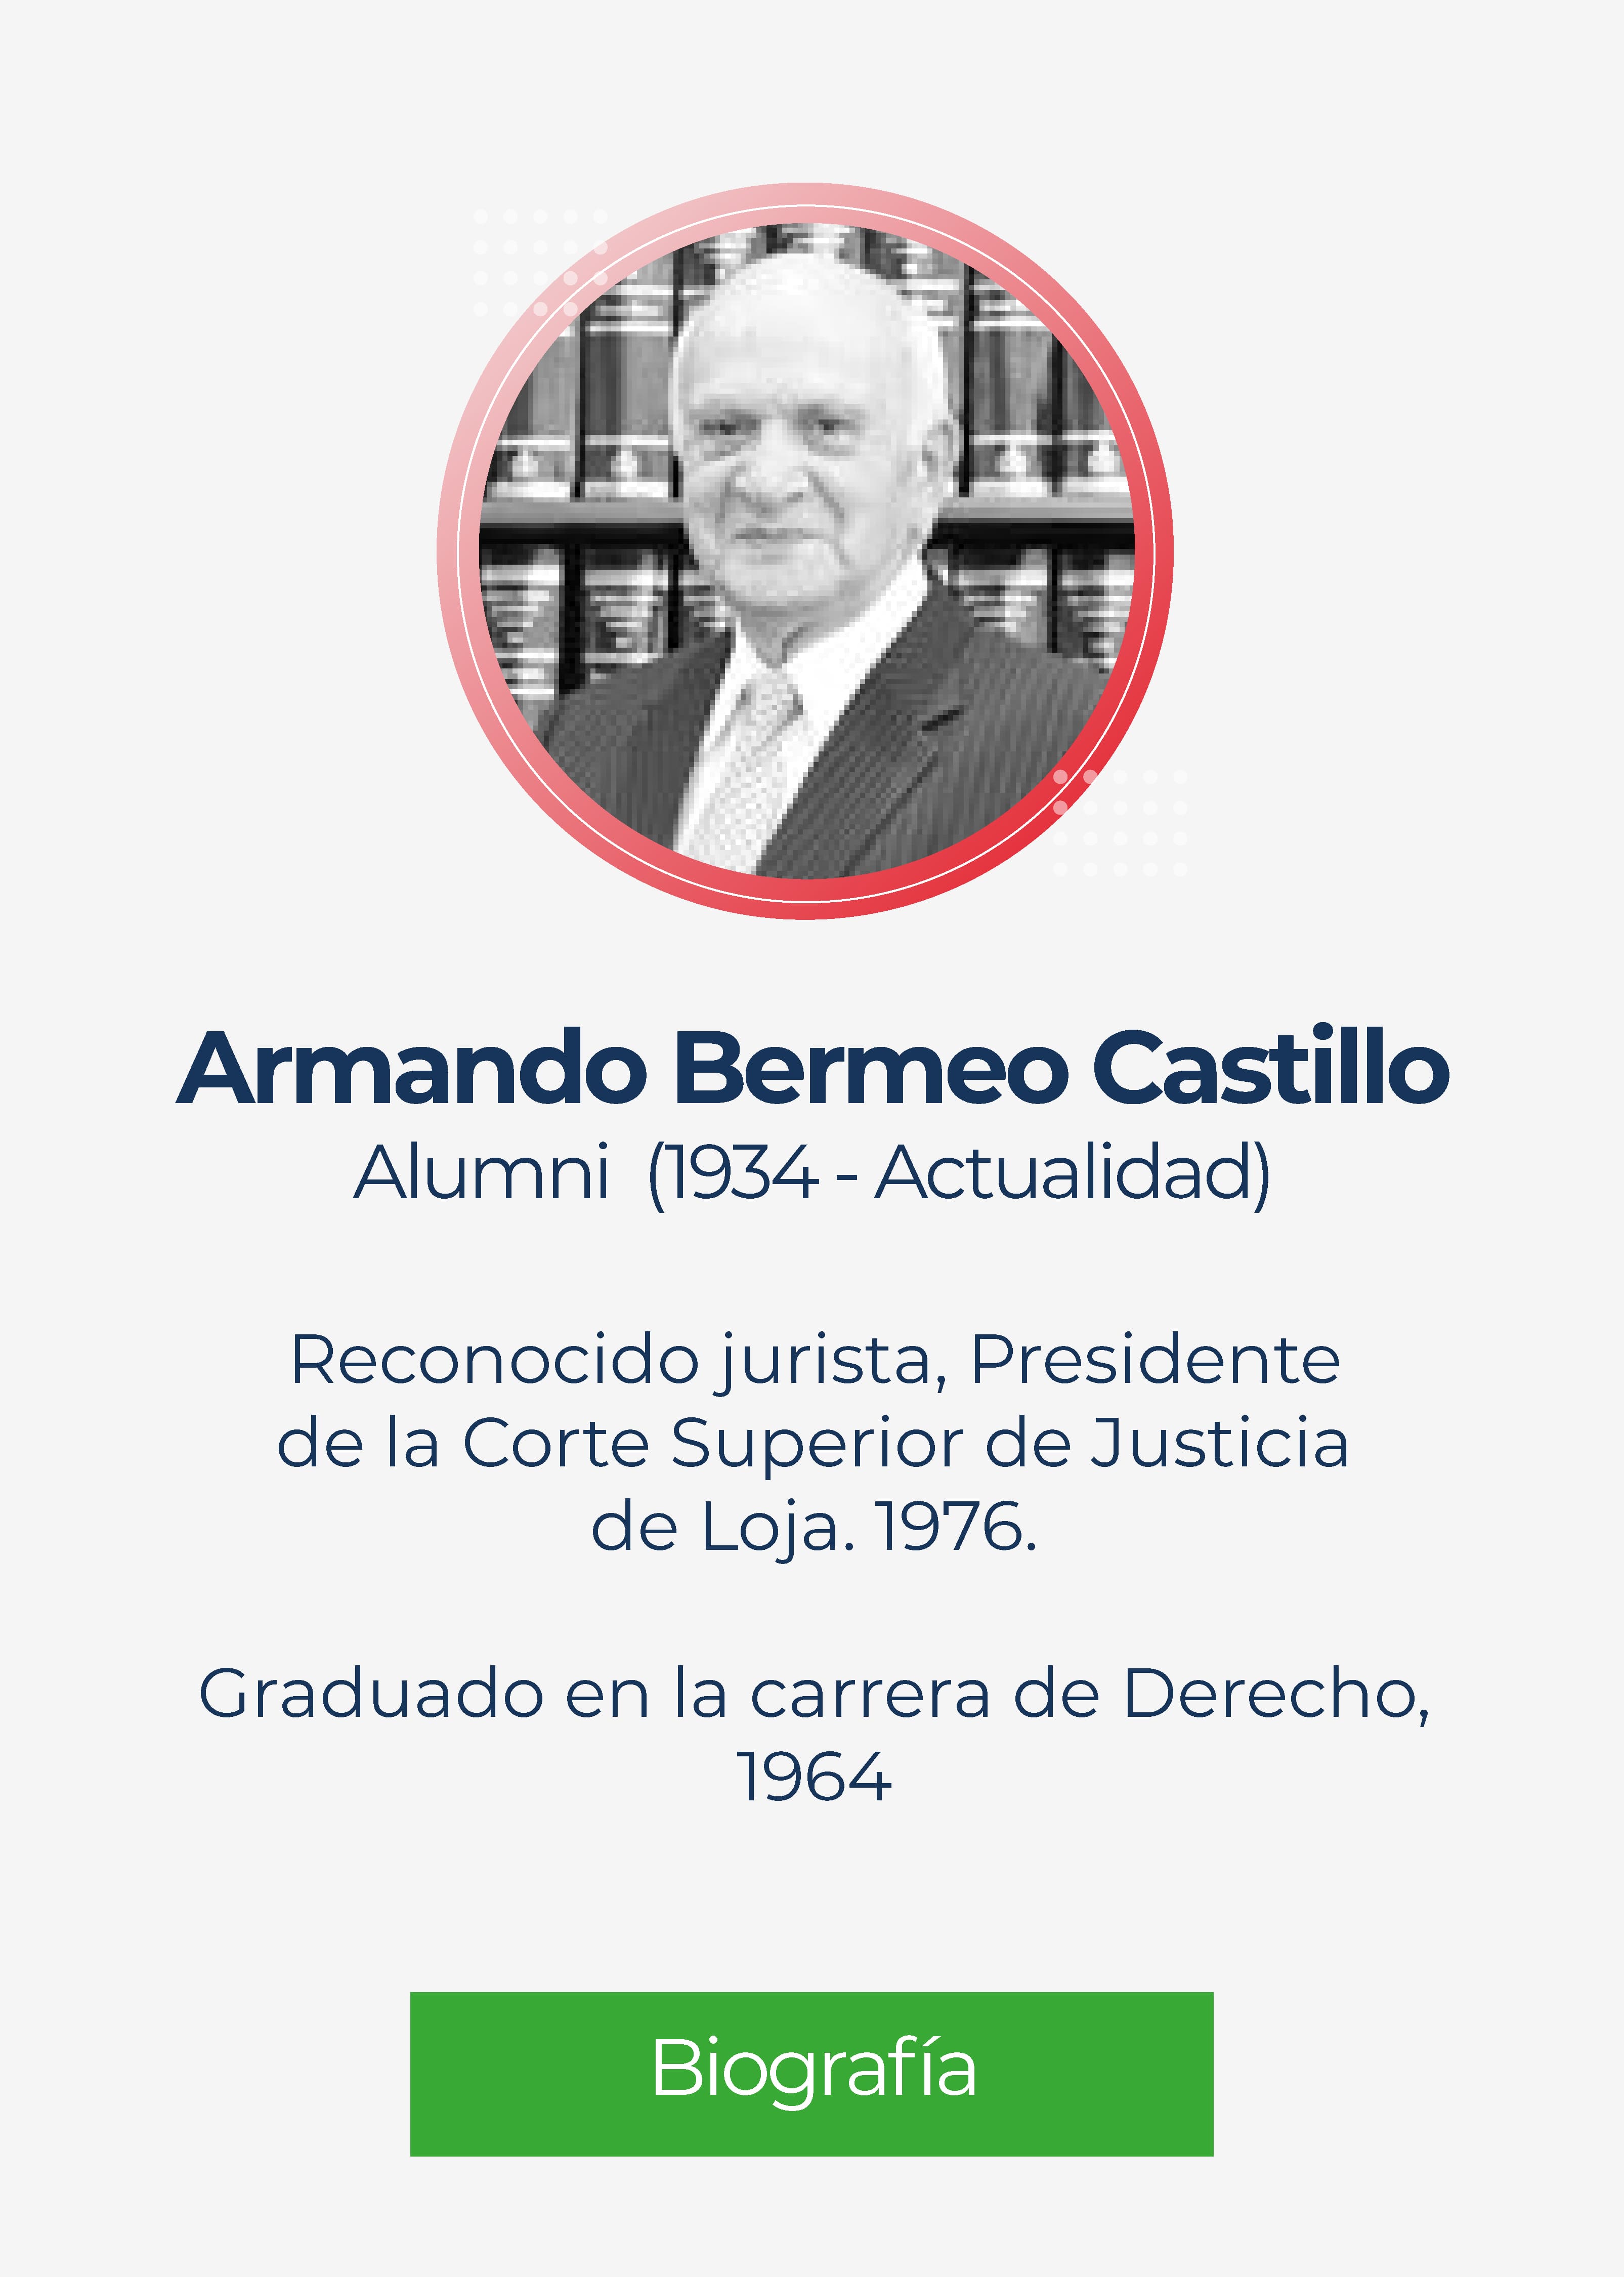 Armando Bermeo Castillo